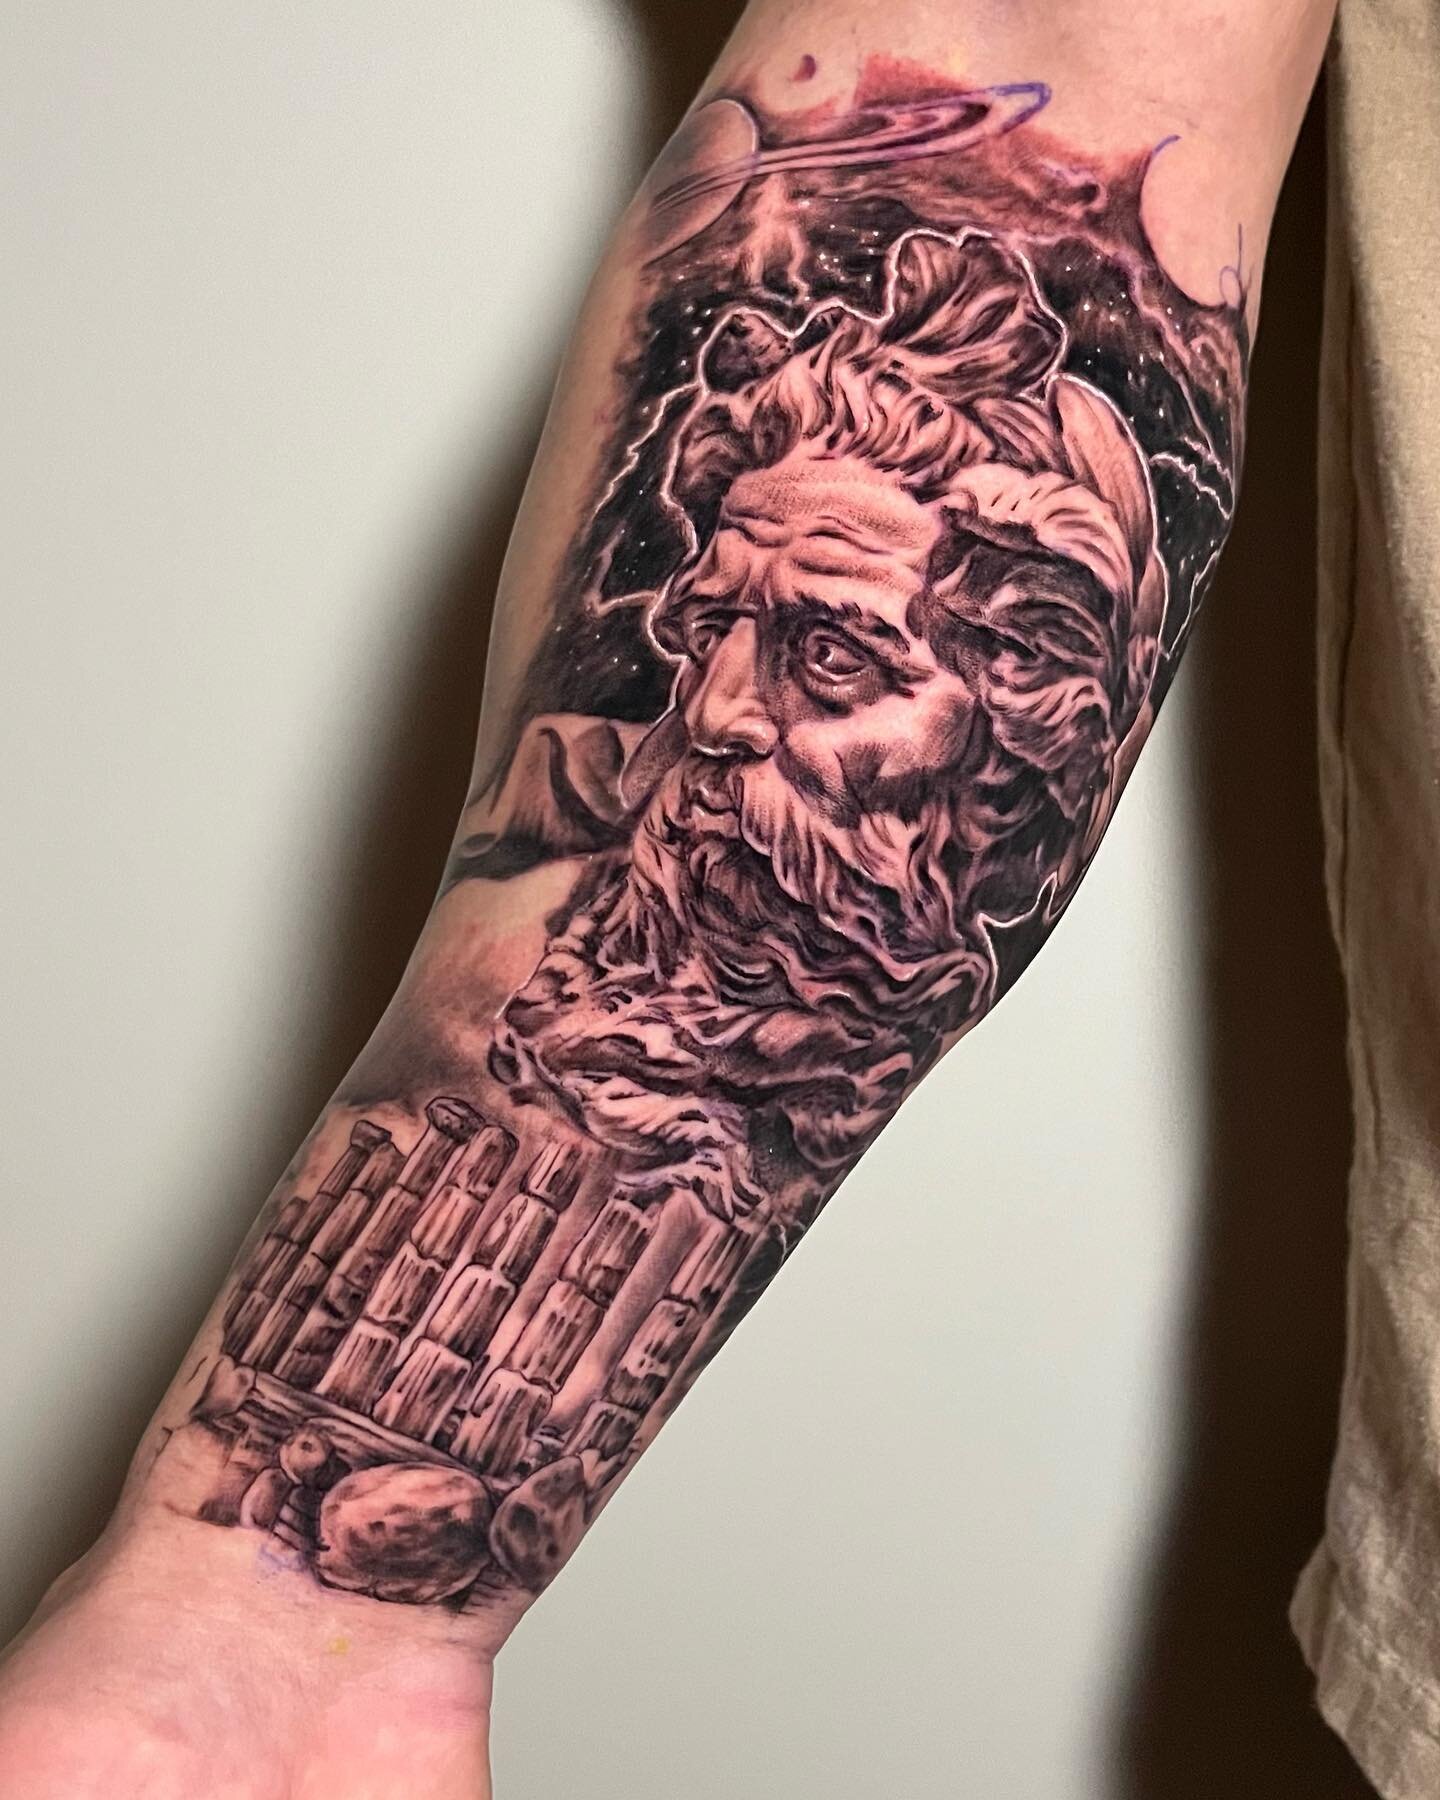 A cool mythology half-sleeve, done by Jamie!
@hometowntattoos 
#mythologytattoo #spacetattoo #tattoosleeve #halfsleeve